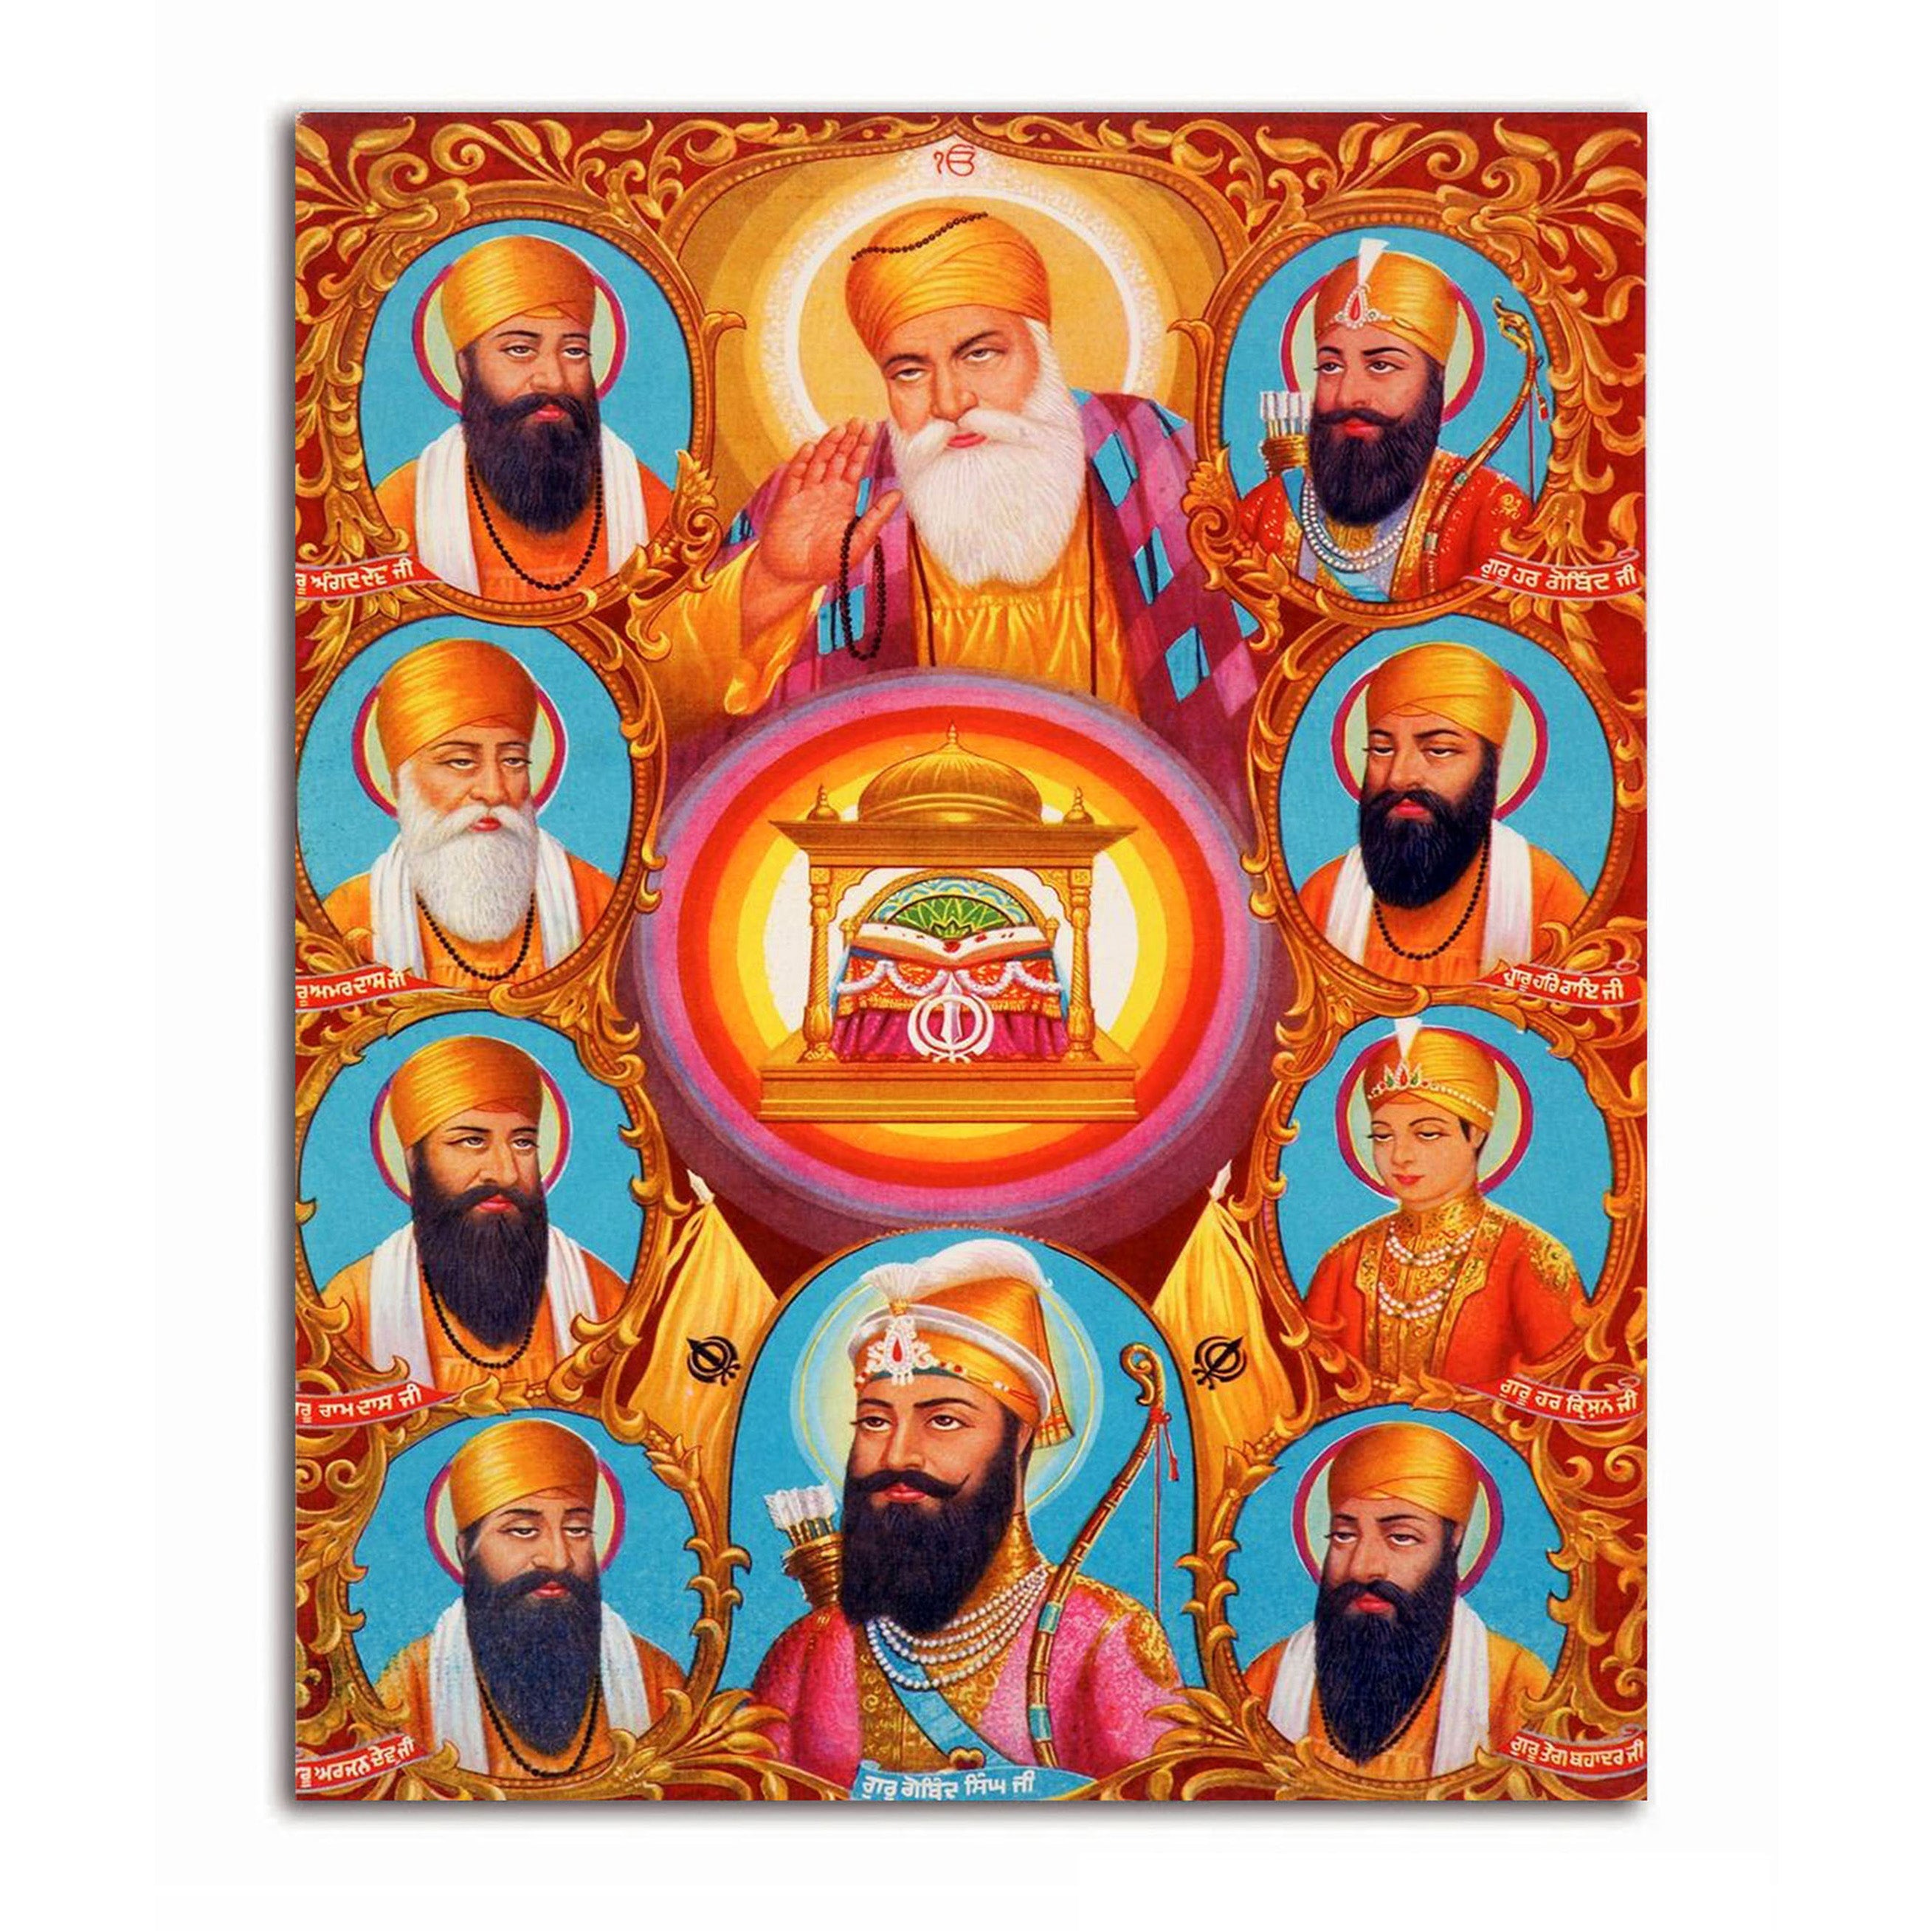 Ten Holy Sikh Gurus